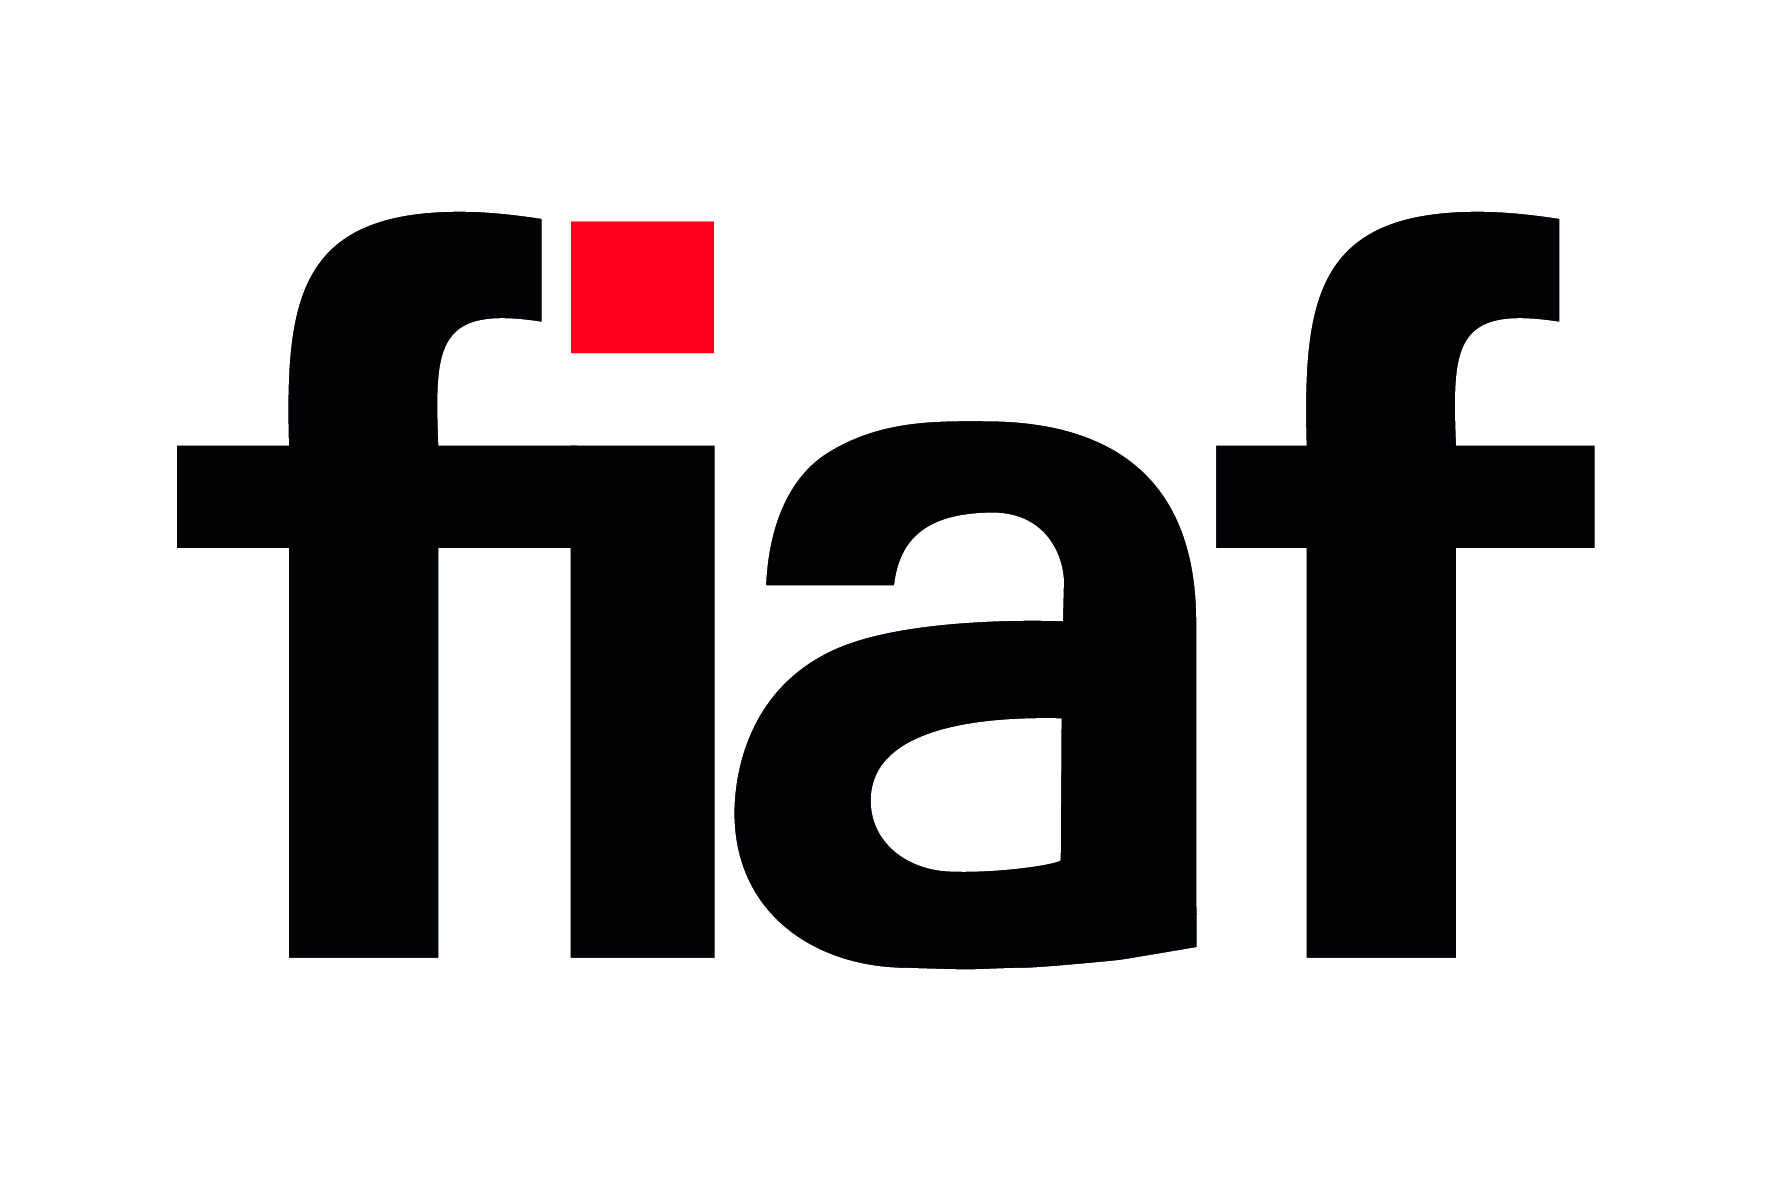 international federation of film archives logo "fiaf"